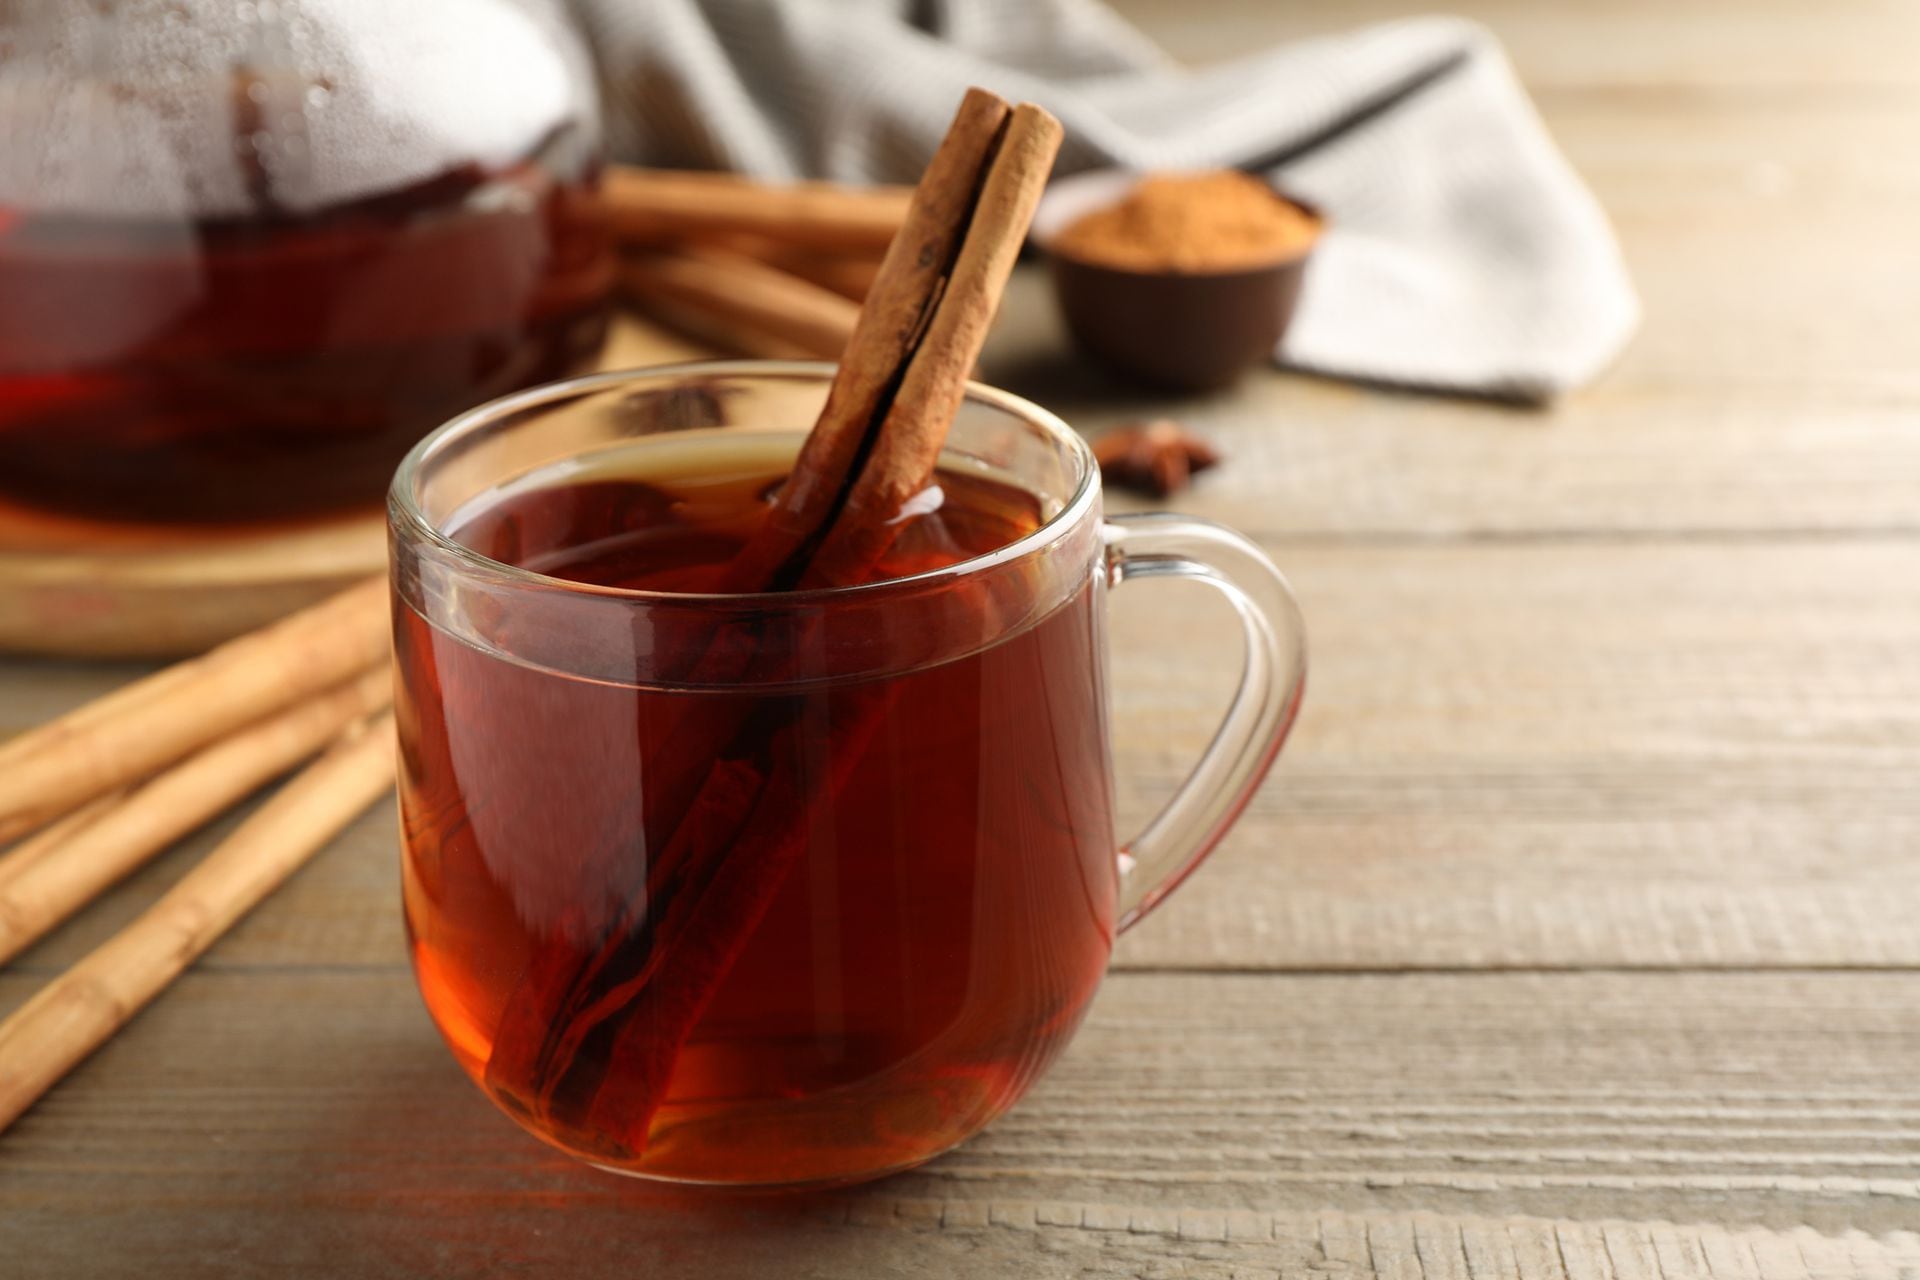 Para qué sirve tomar té de canela con clavo de olor? – El Financiero